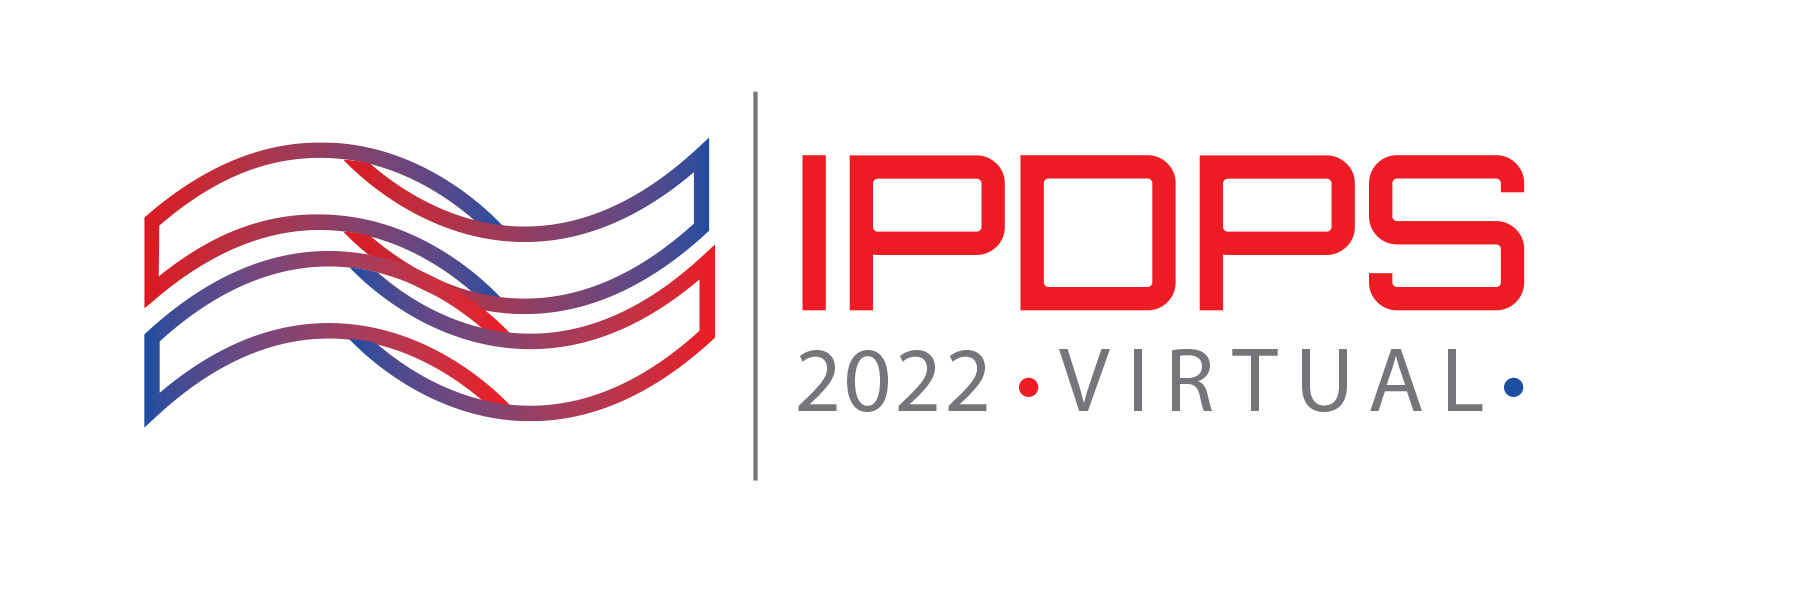 IPDPS 2022 Logo